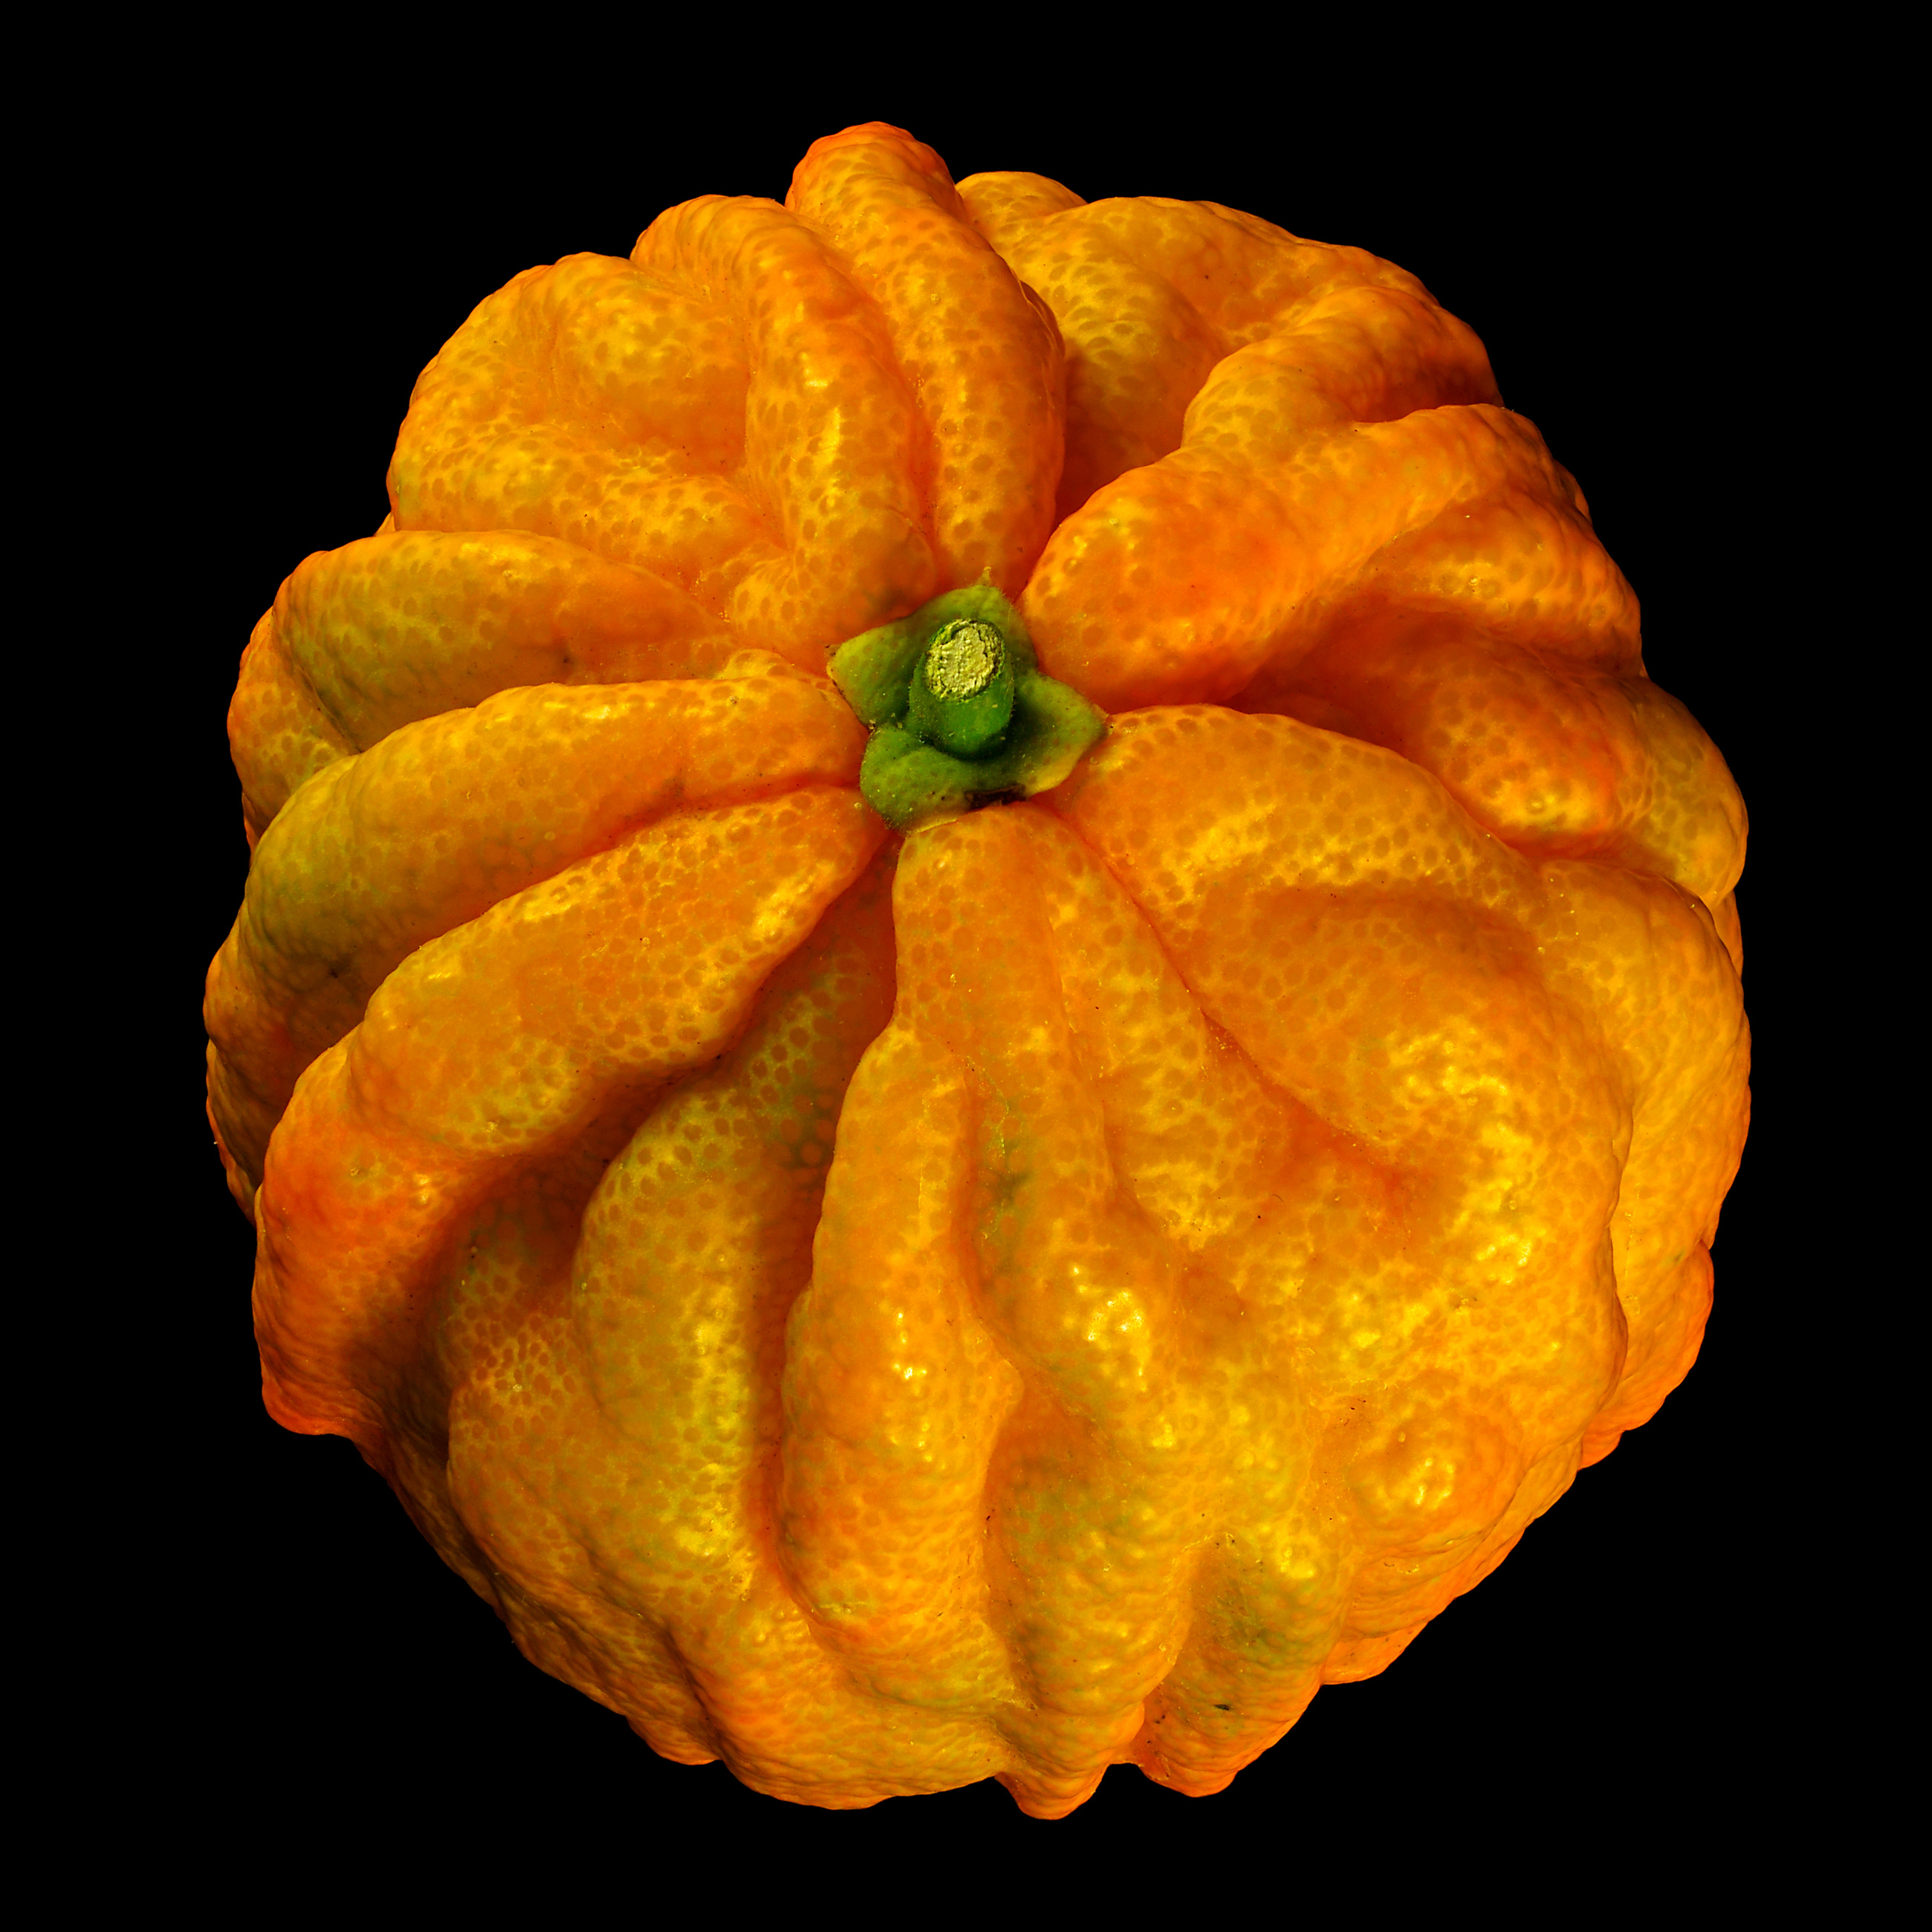 Die Gefurchte Pomeranze: Citrus × aurantium ‚Canaliculata‘